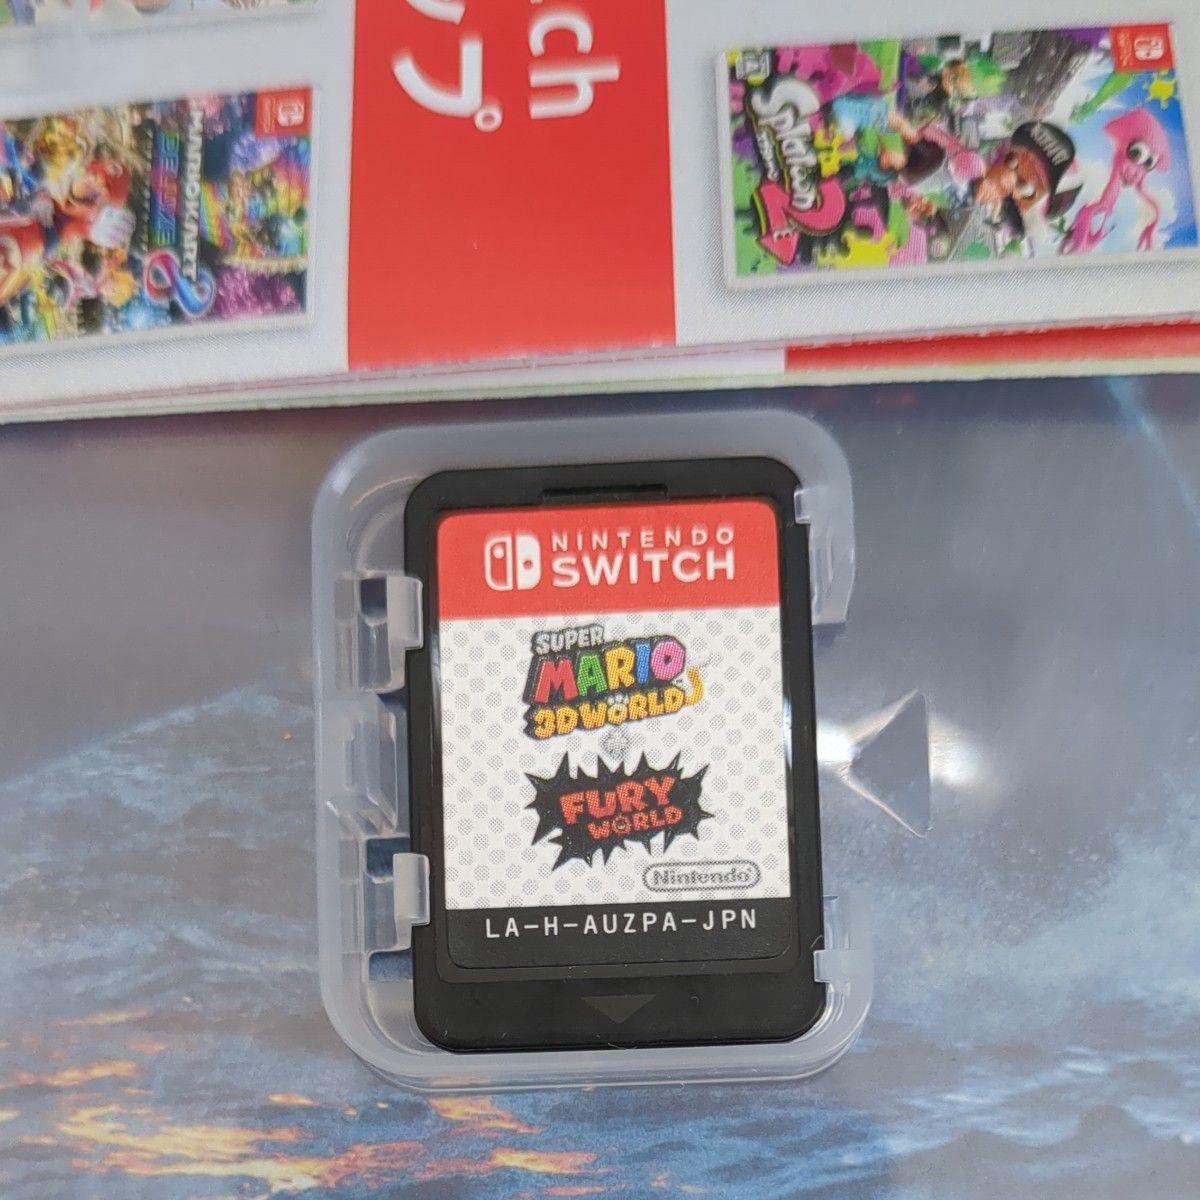 スーパーマリオ 3Dワールド フリューワールド Nintendo -Switch中古品